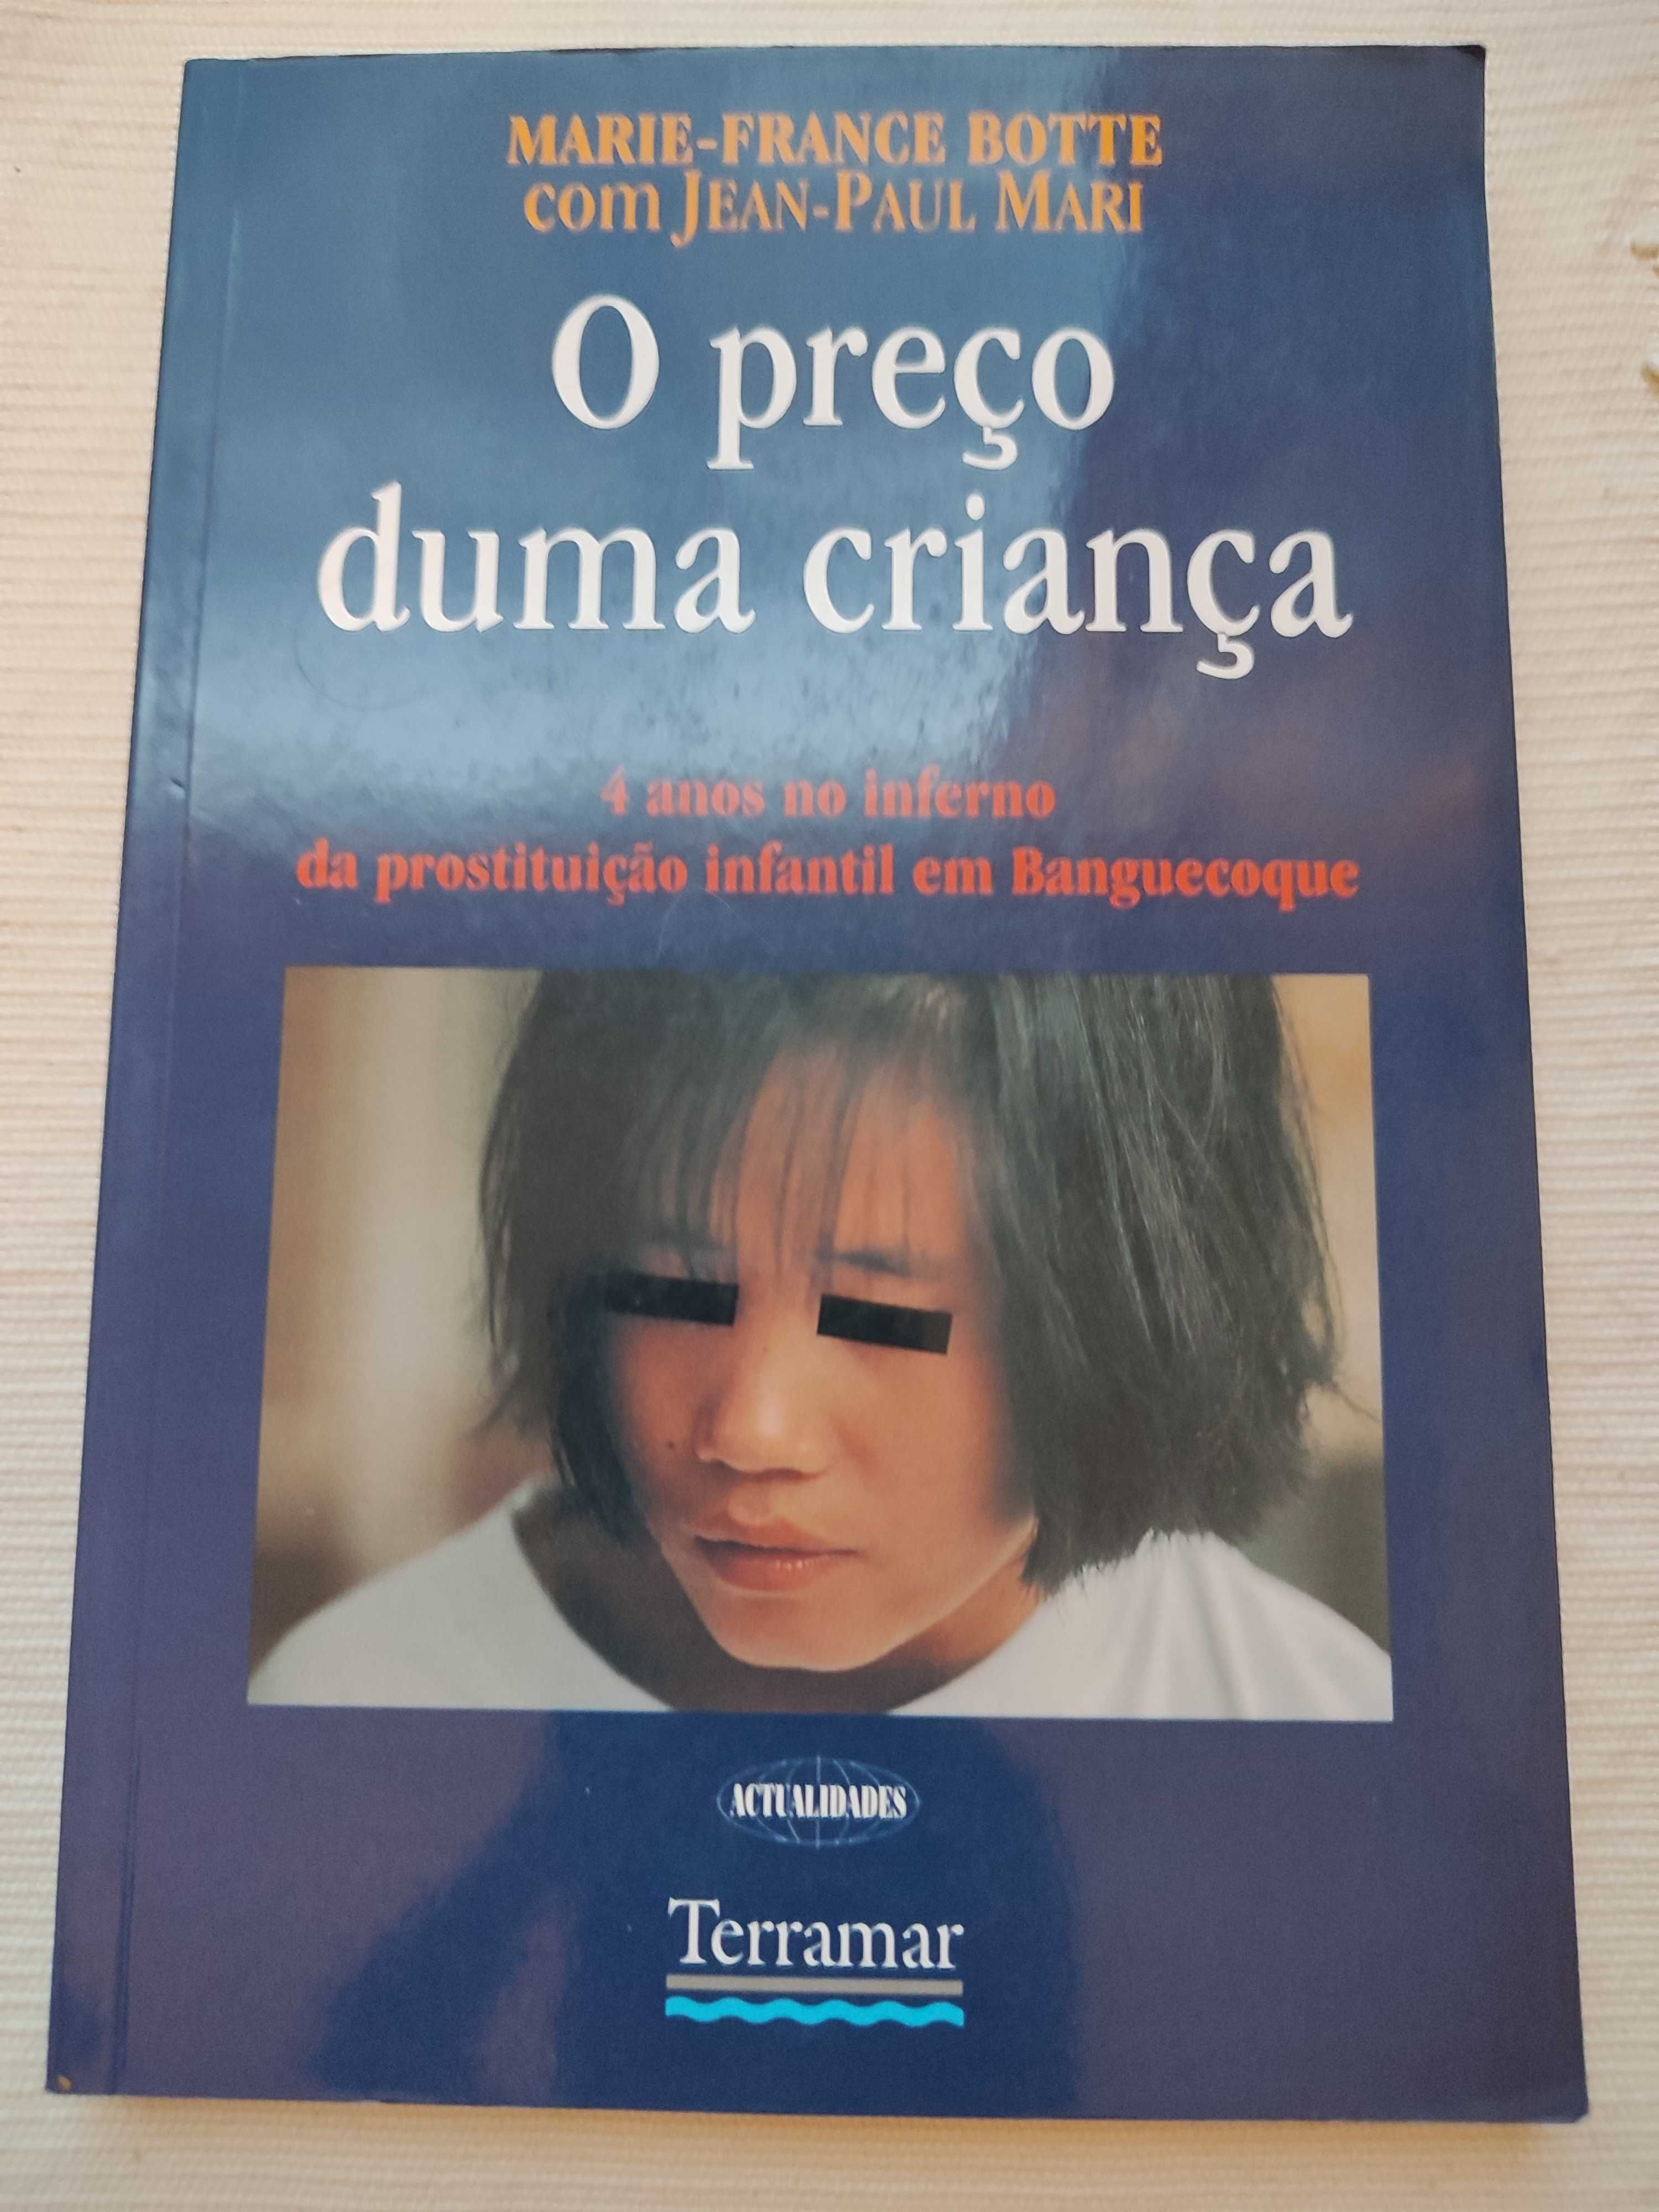 Livro "O preço de uma criança"